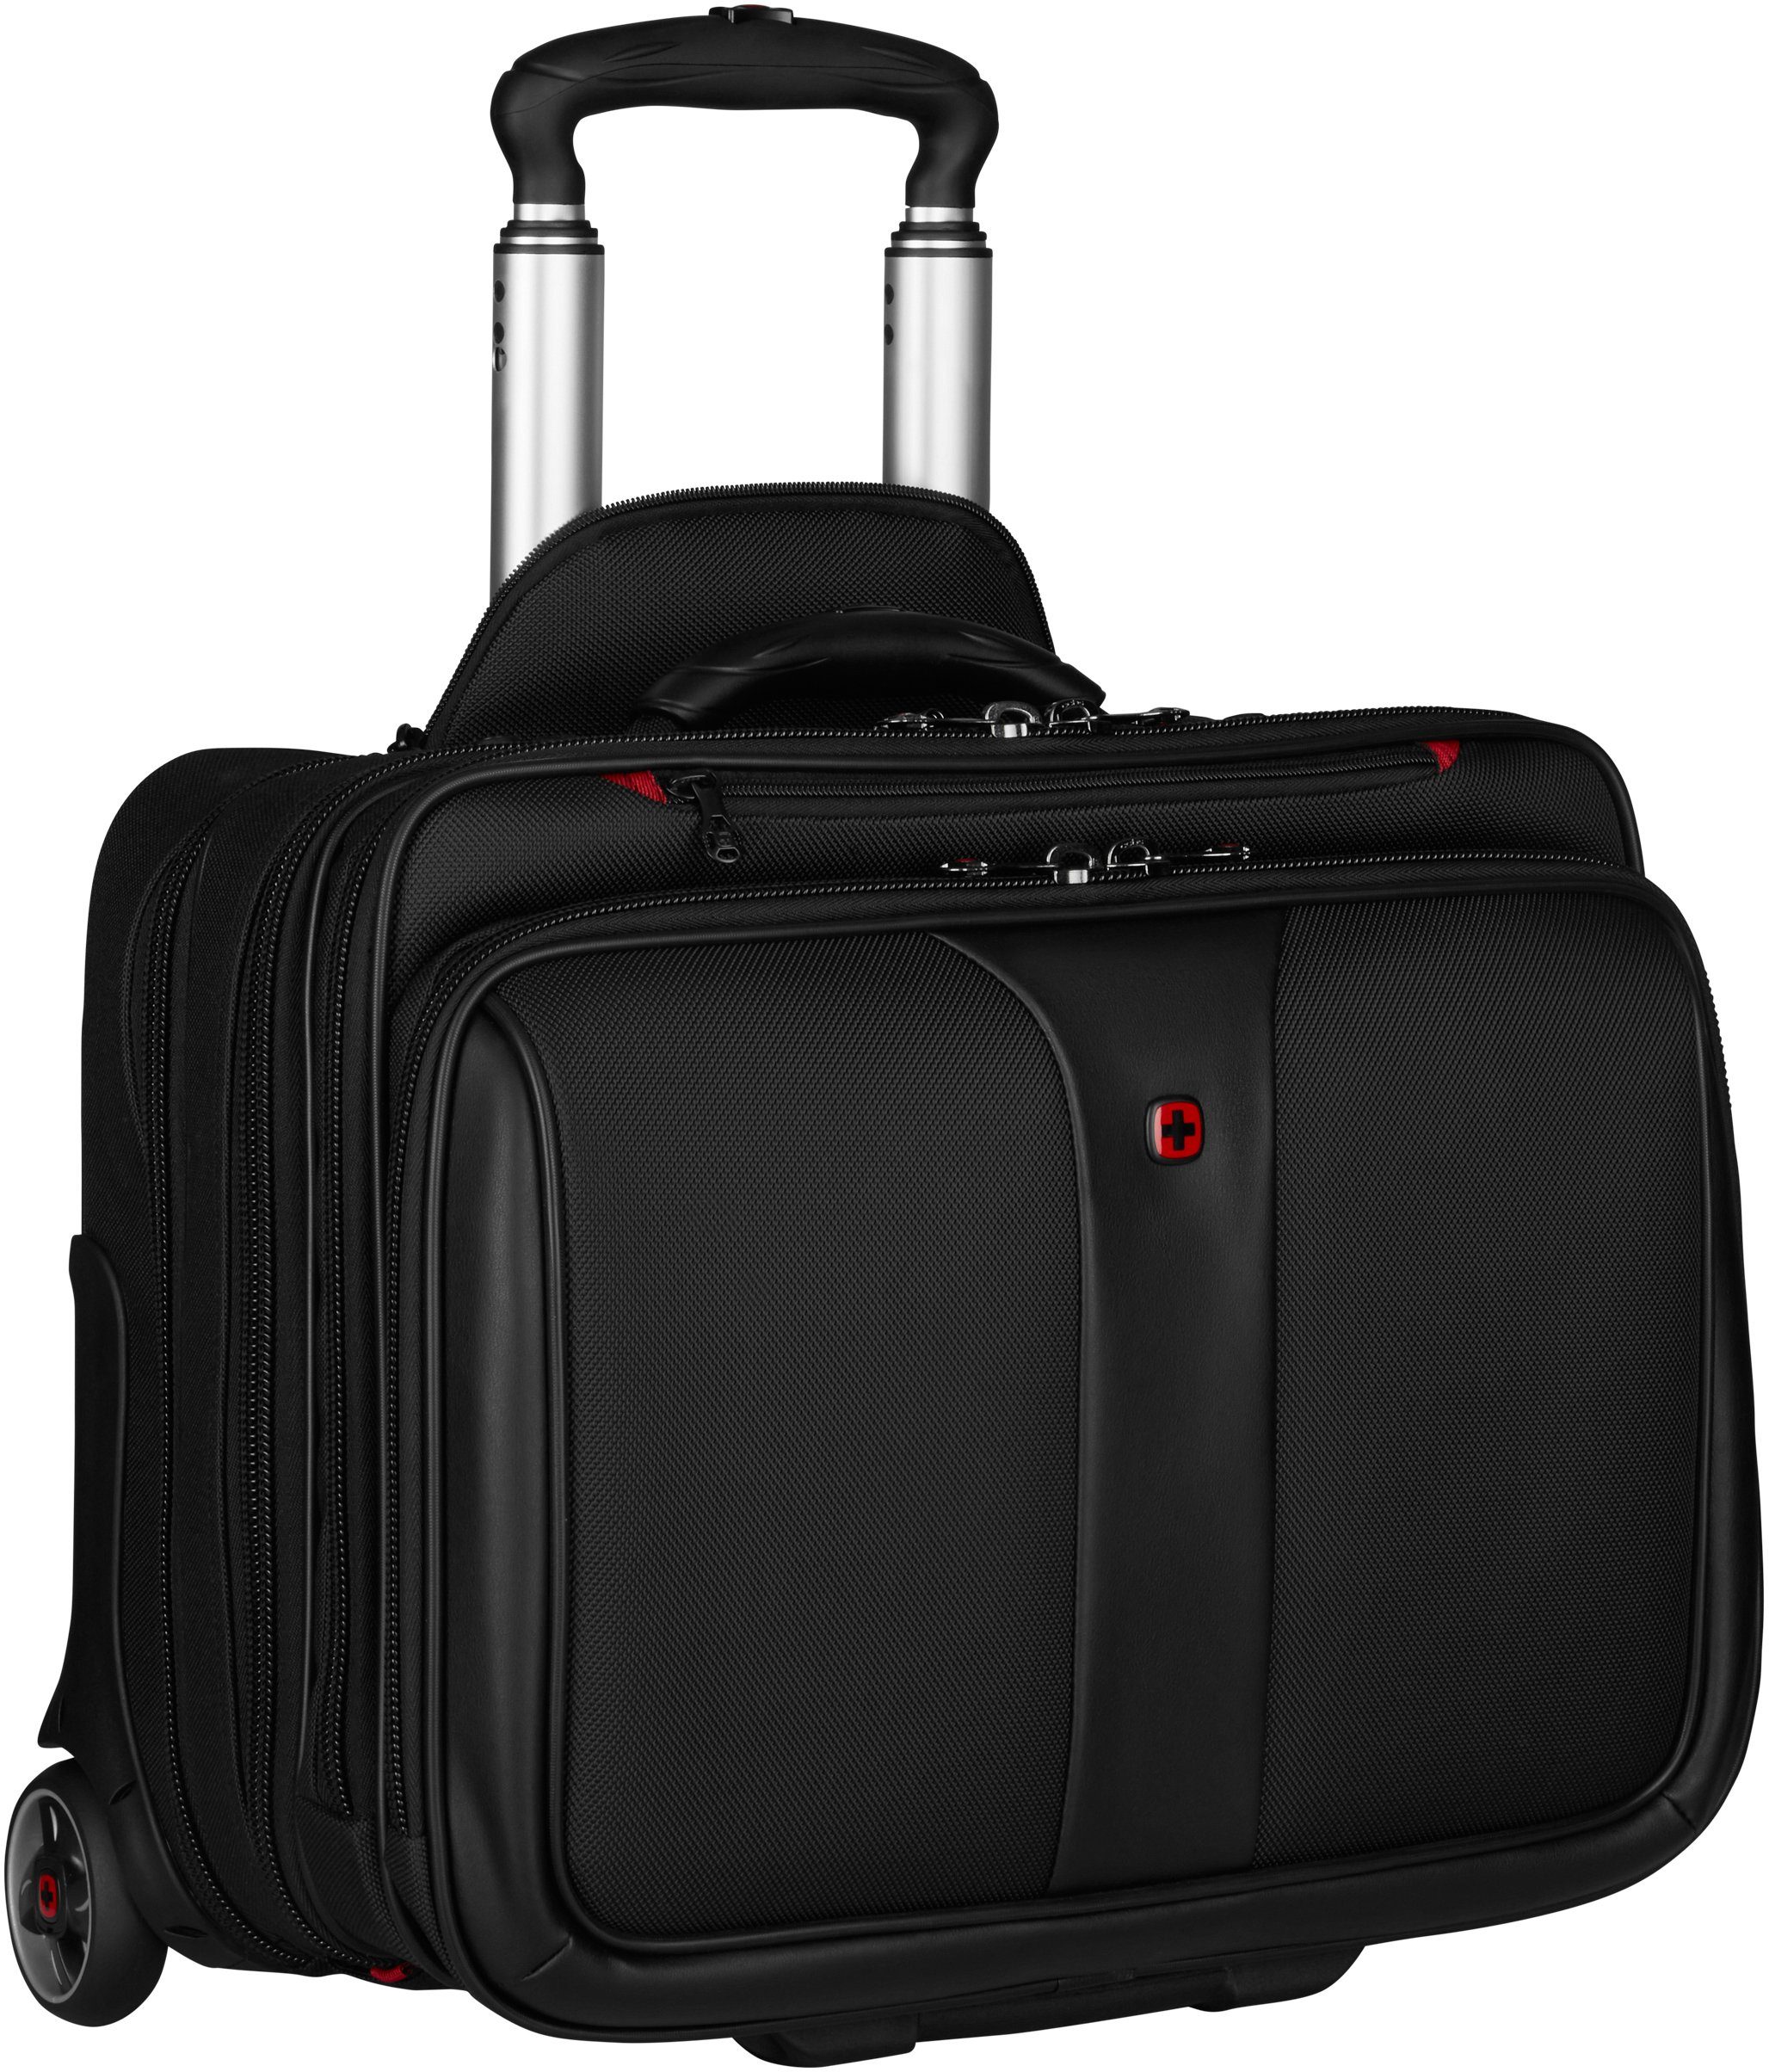 Traveler Koffer online kaufen | OTTO